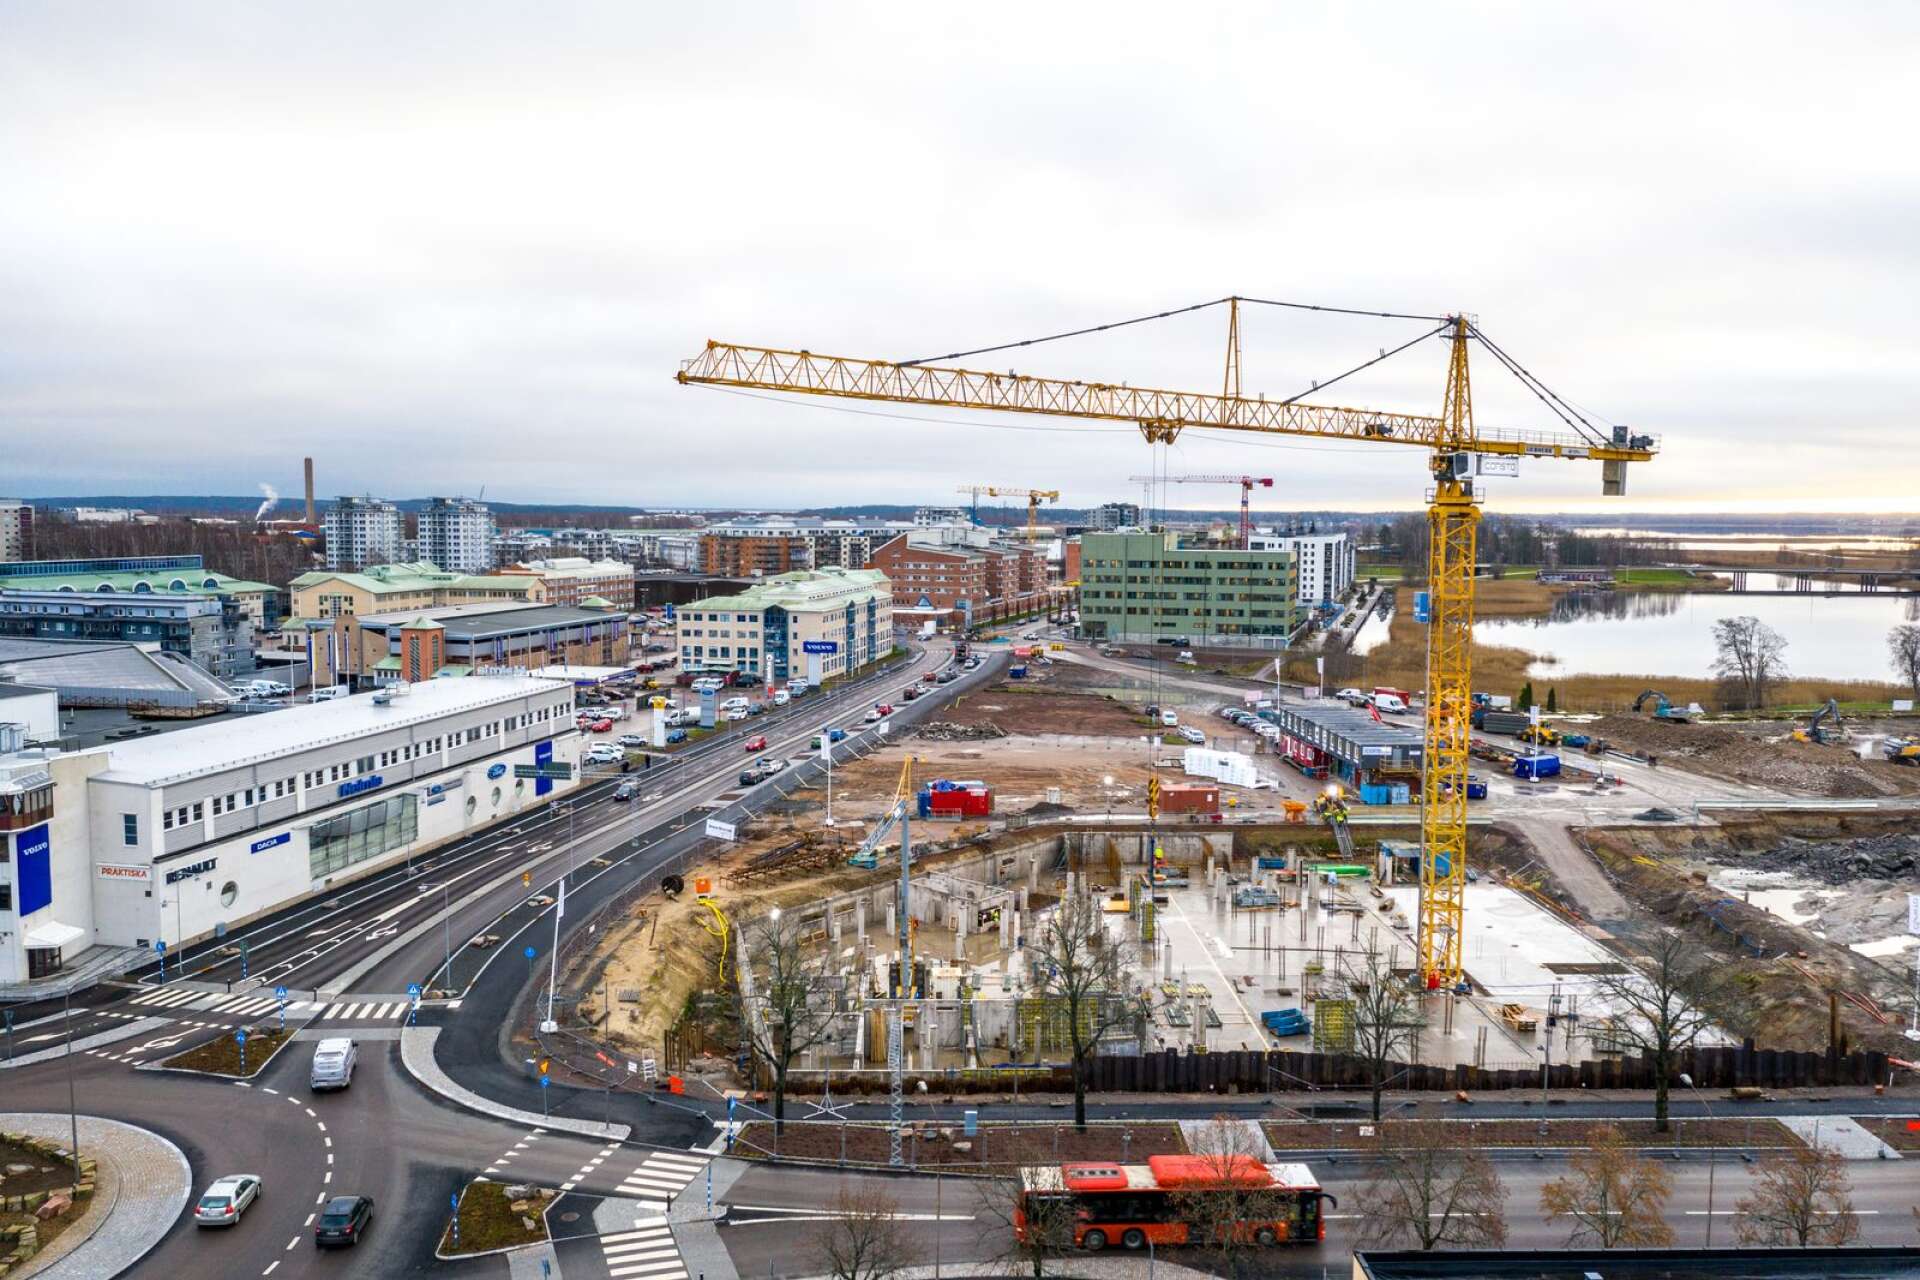 Byggandet i Karlstad fortsätter i mycket hög takt även under 2021. Mest intensivt är det på Tullholmen där flera stora projekt redan pågår.